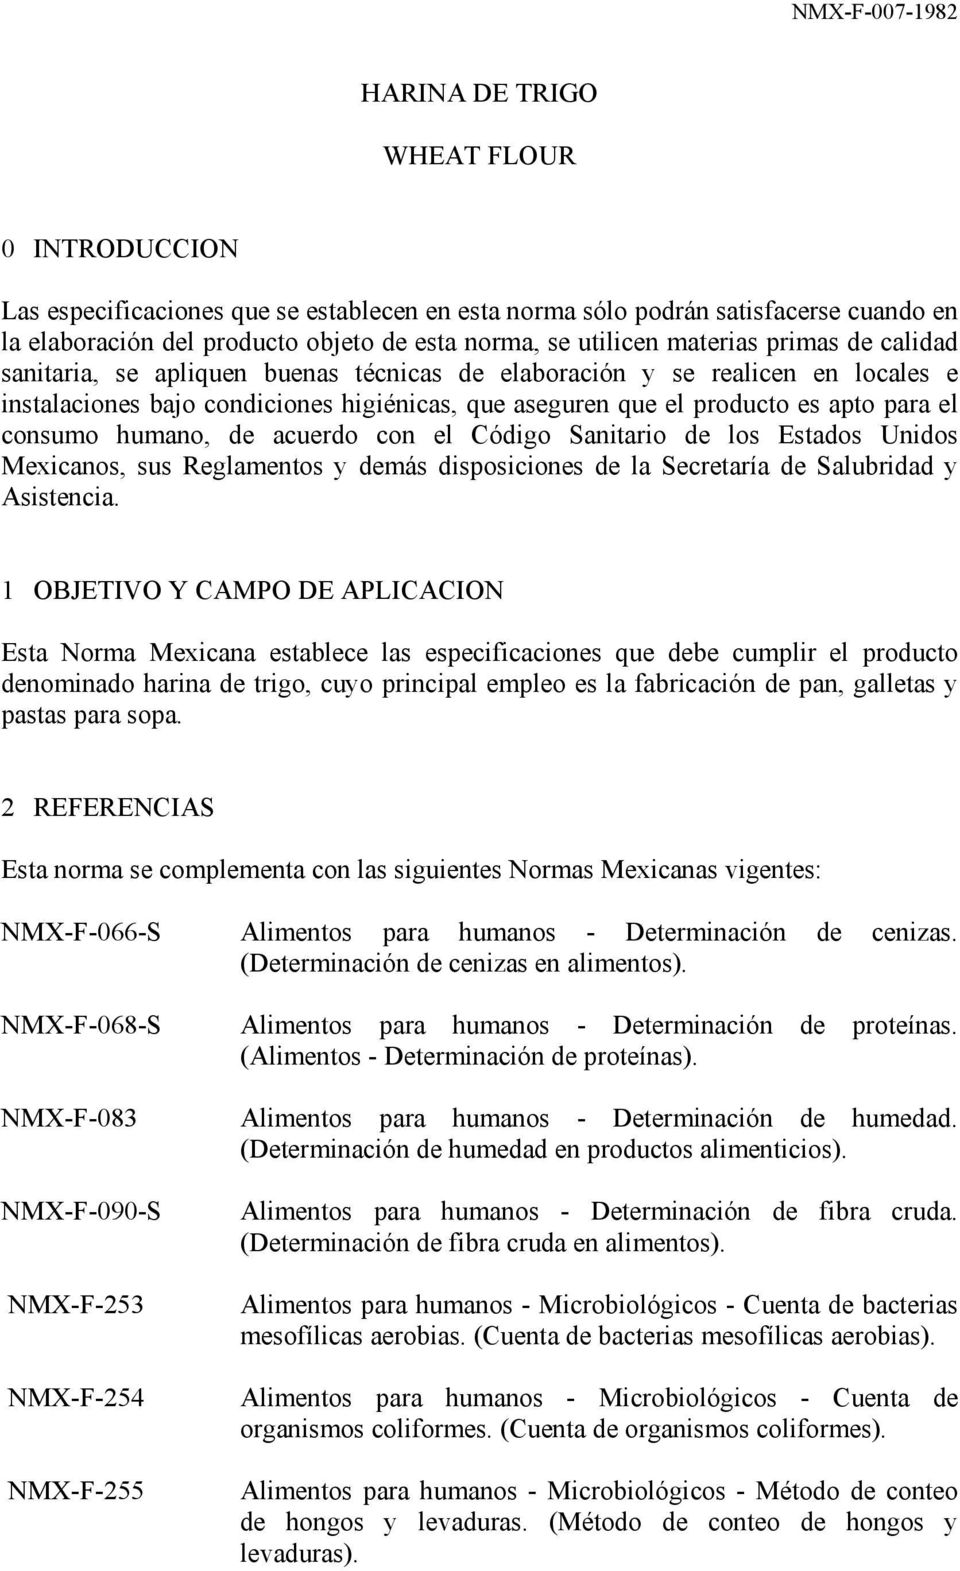 consumo humano, de acuerdo con el Código Sanitario de los Estados Unidos Mexicanos, sus Reglamentos y demás disposiciones de la Secretaría de Salubridad y Asistencia.